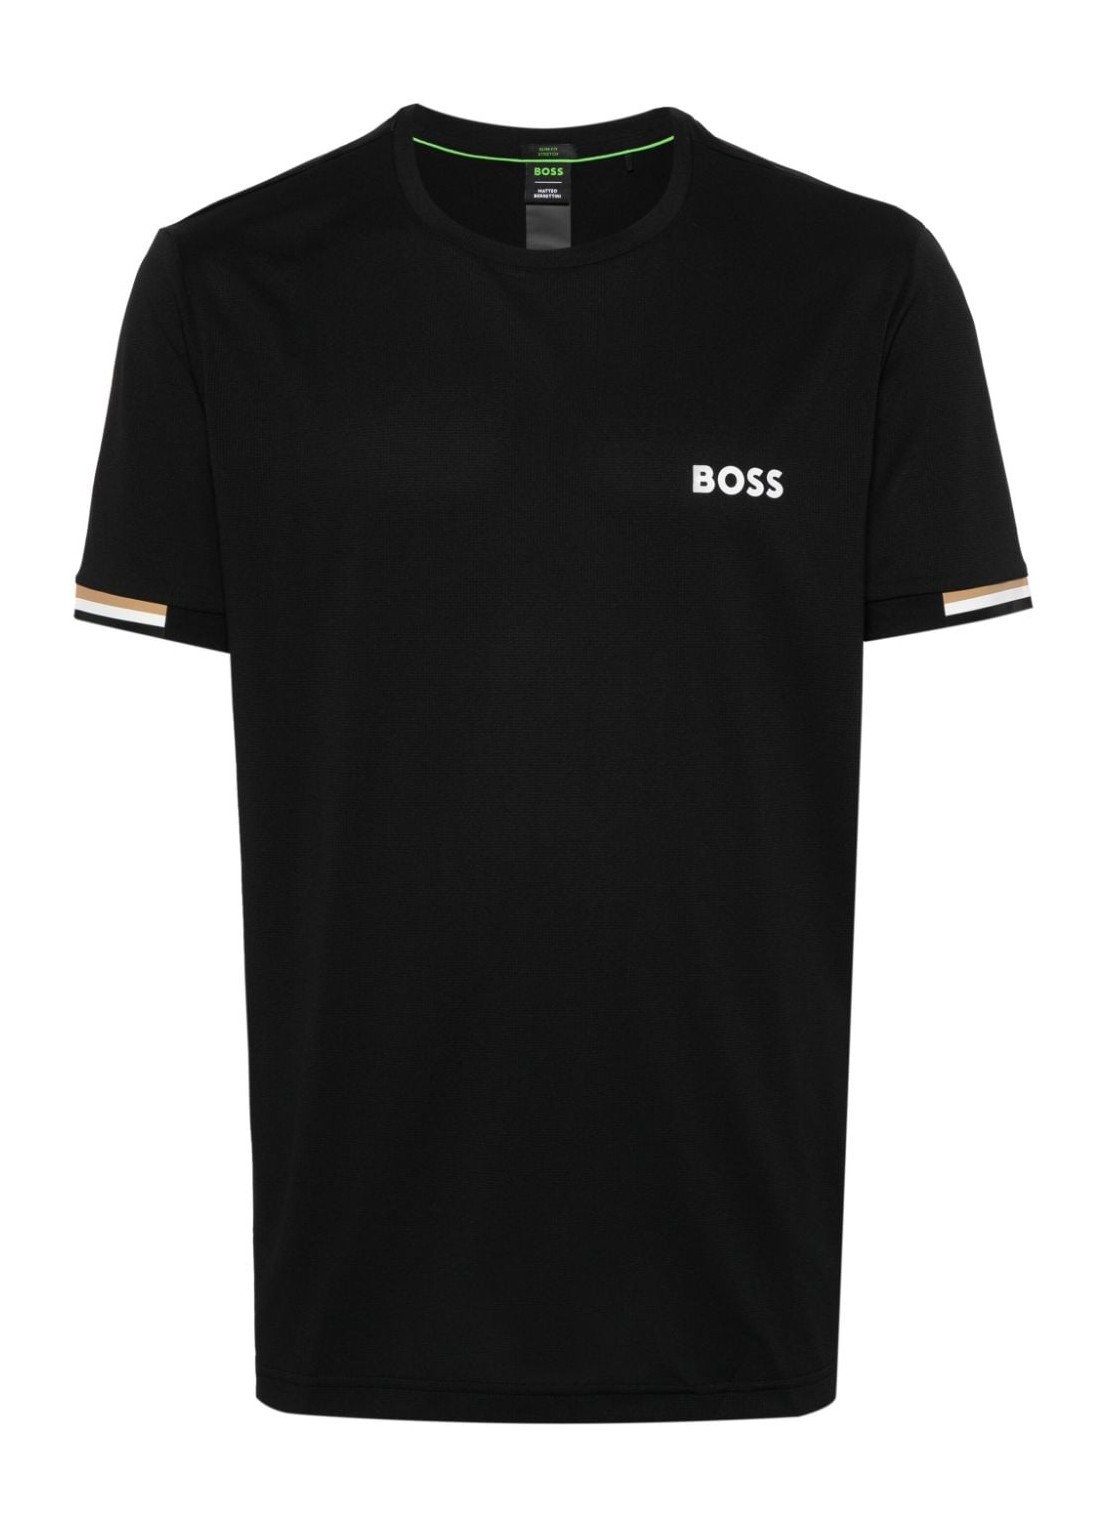 Camiseta boss t-shirt man tee mb 50506348 001 talla XXL
 